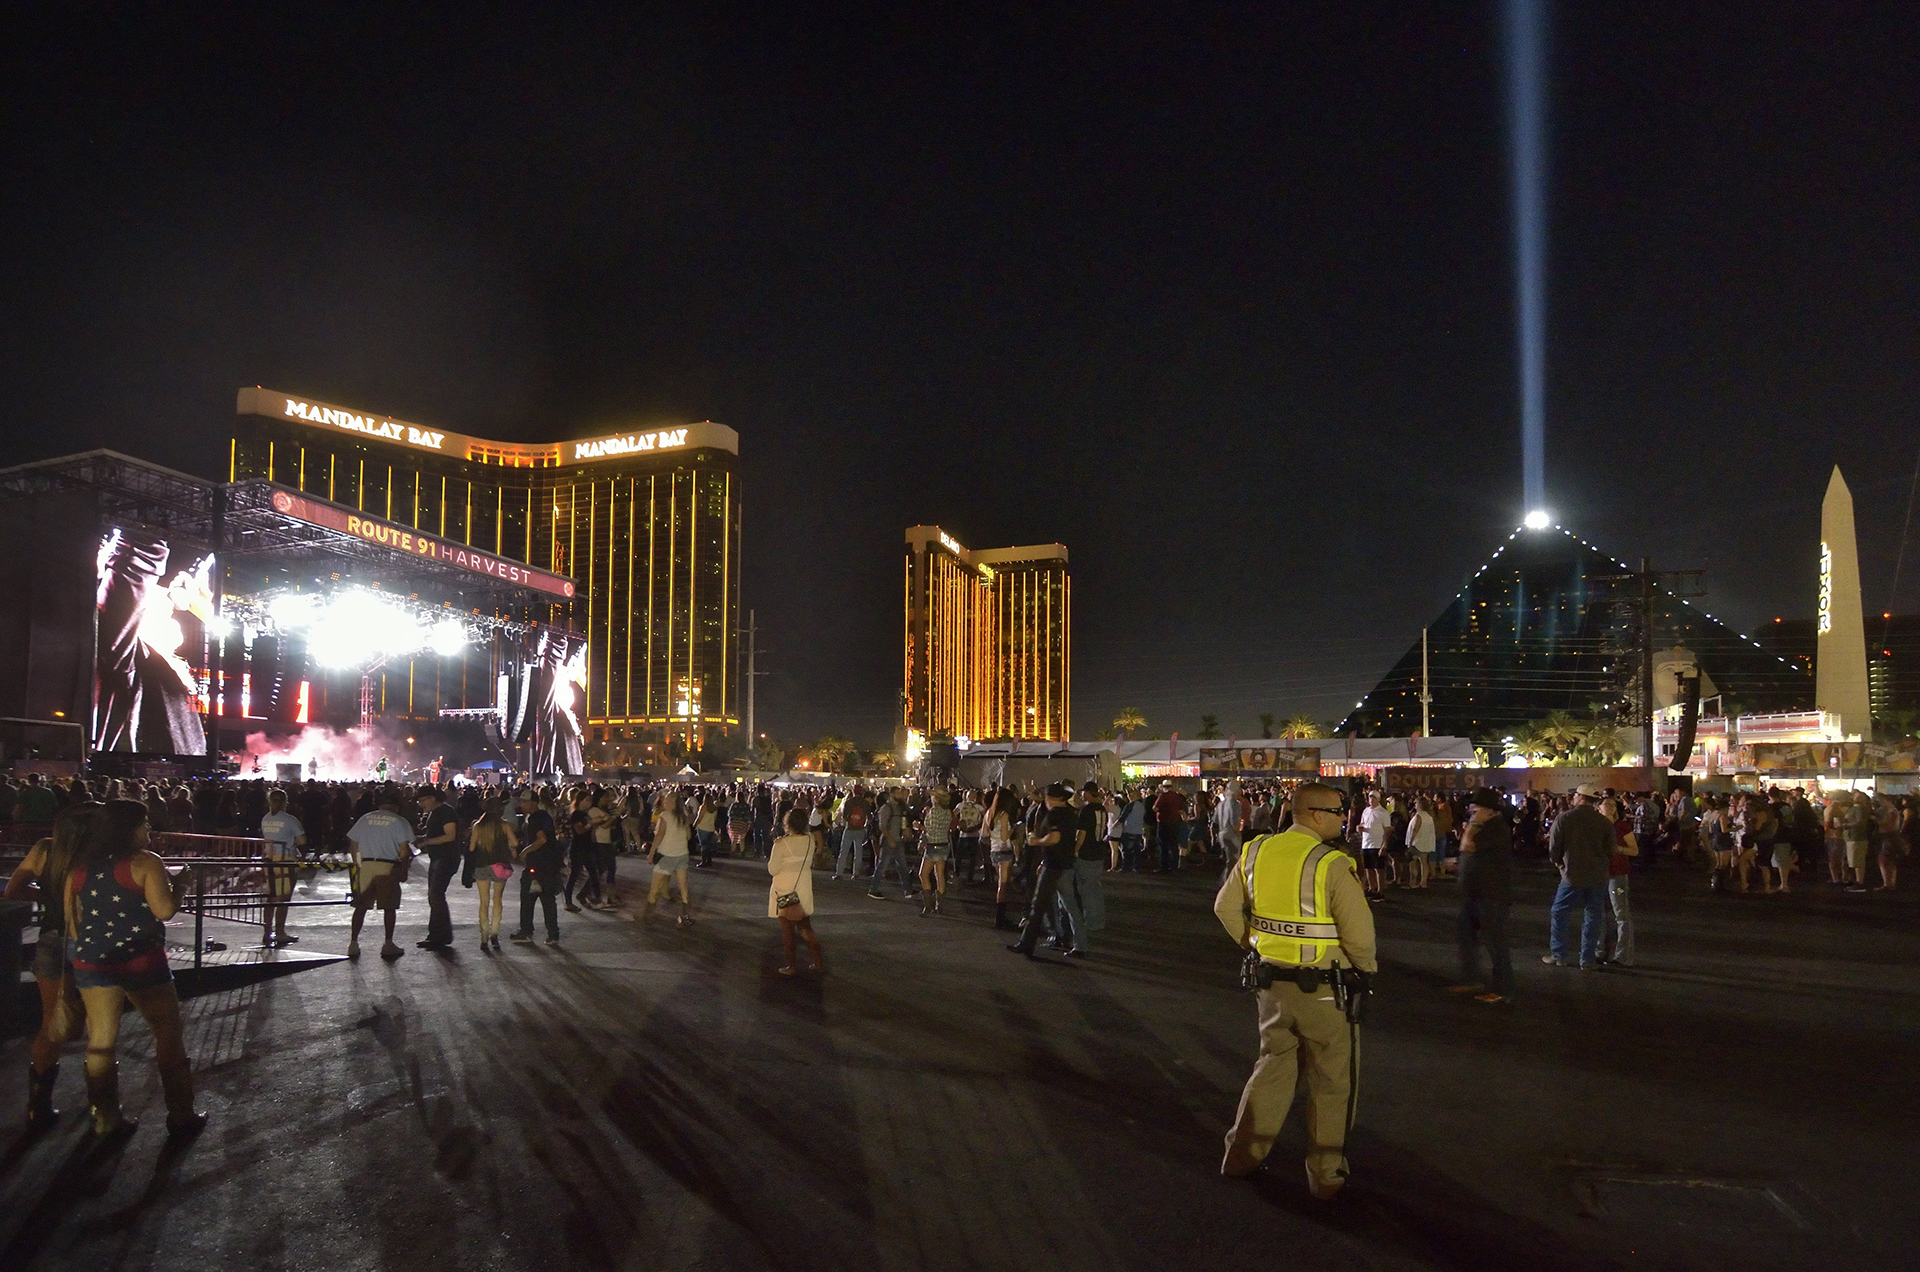 MCX02 LAS VEGAS (ESTADOS UNIDOS), 02/10/2017.- Vista general de uno de los escenarios del festival de música “Route 91. Harvest”, en las Vegas, Estados Unidos, el 30 de septiembre de 2017.